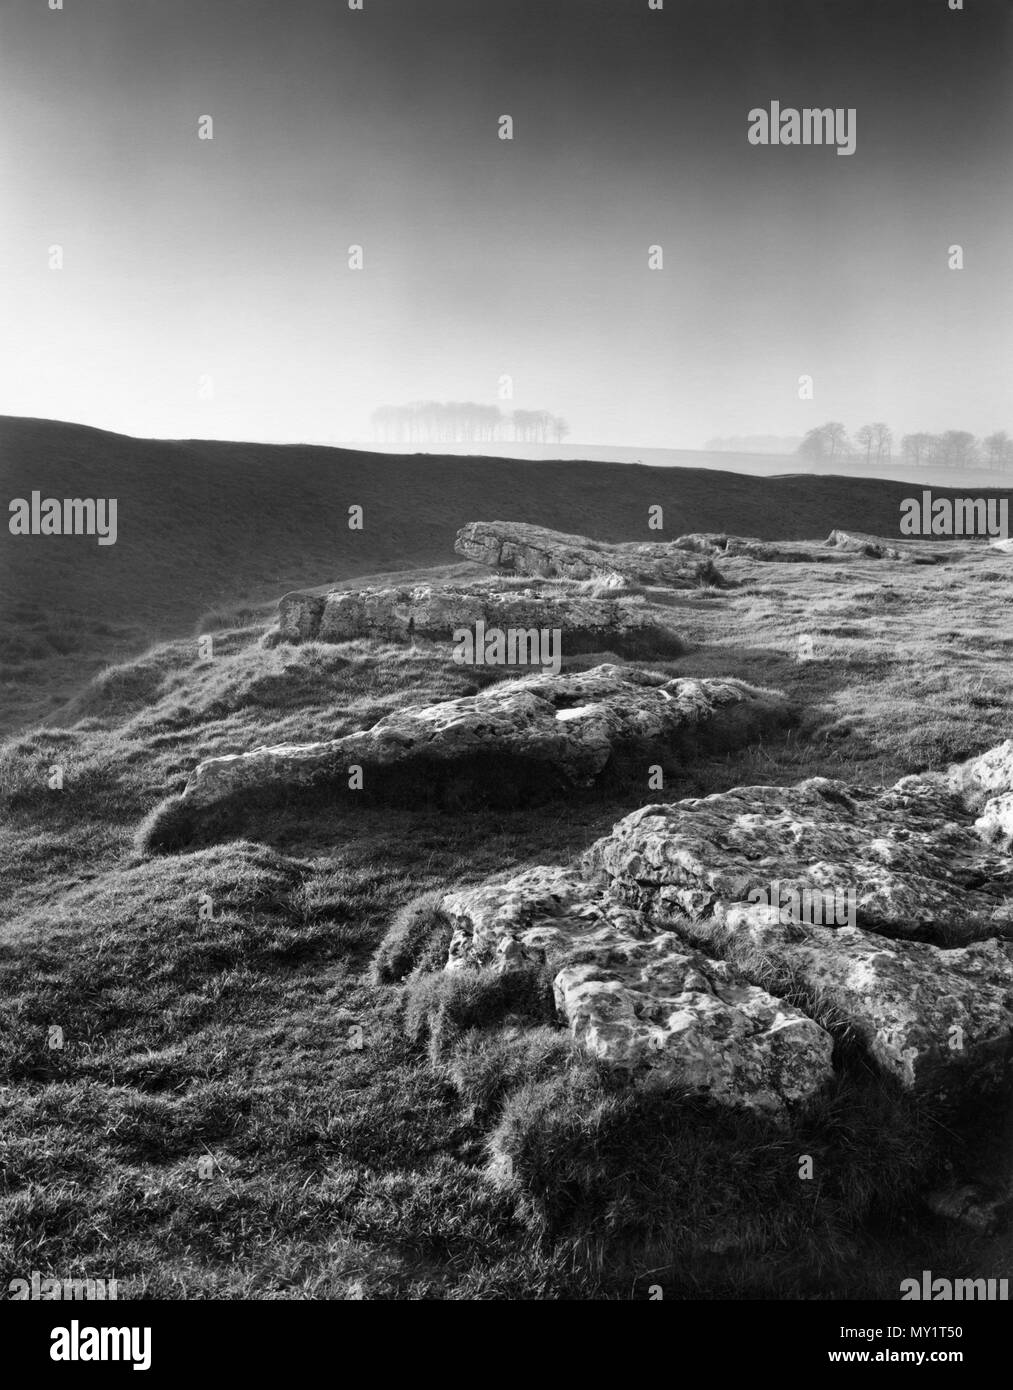 Anzeigen NW von Arbor Niedrig, Derbyshire, UK: Ein oval Einstellung von recumbent Kalkstein Bodenplatten innerhalb Graben & Bank eines henge Monument mit Eingänge an SE&NW. Stockfoto